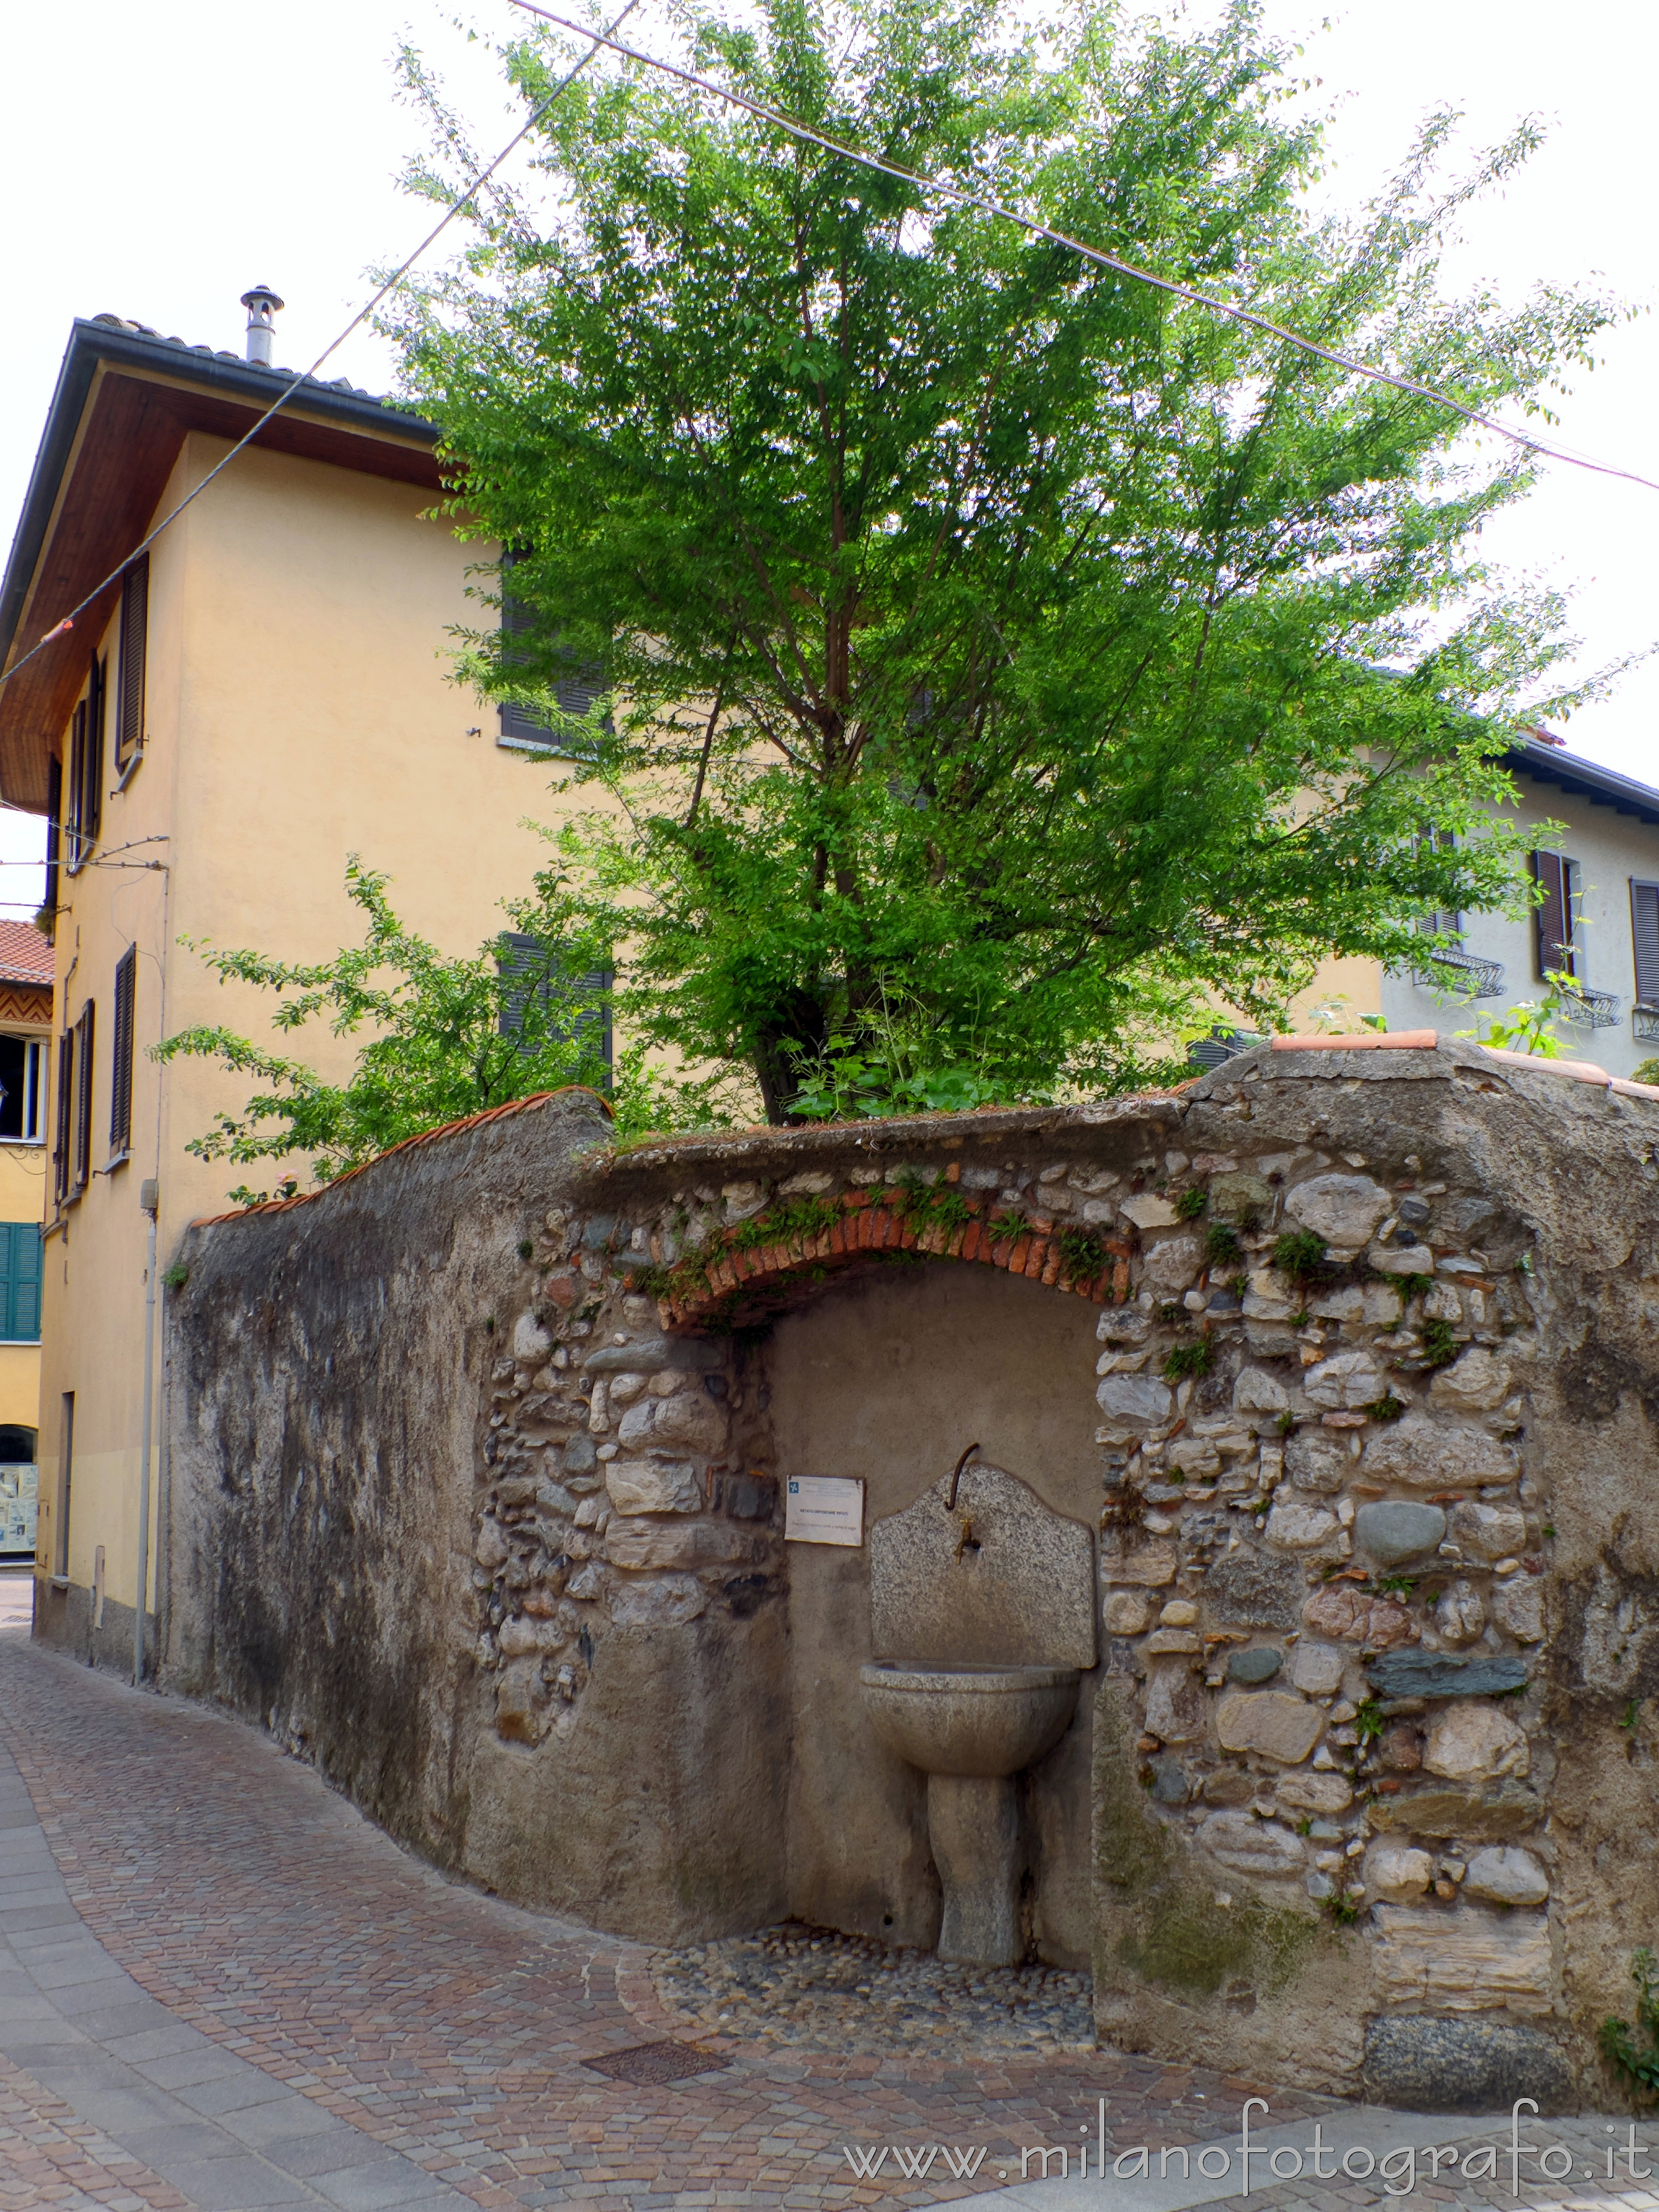 Canzo (Como, Italy): Old wall with fountain - Canzo (Como, Italy)